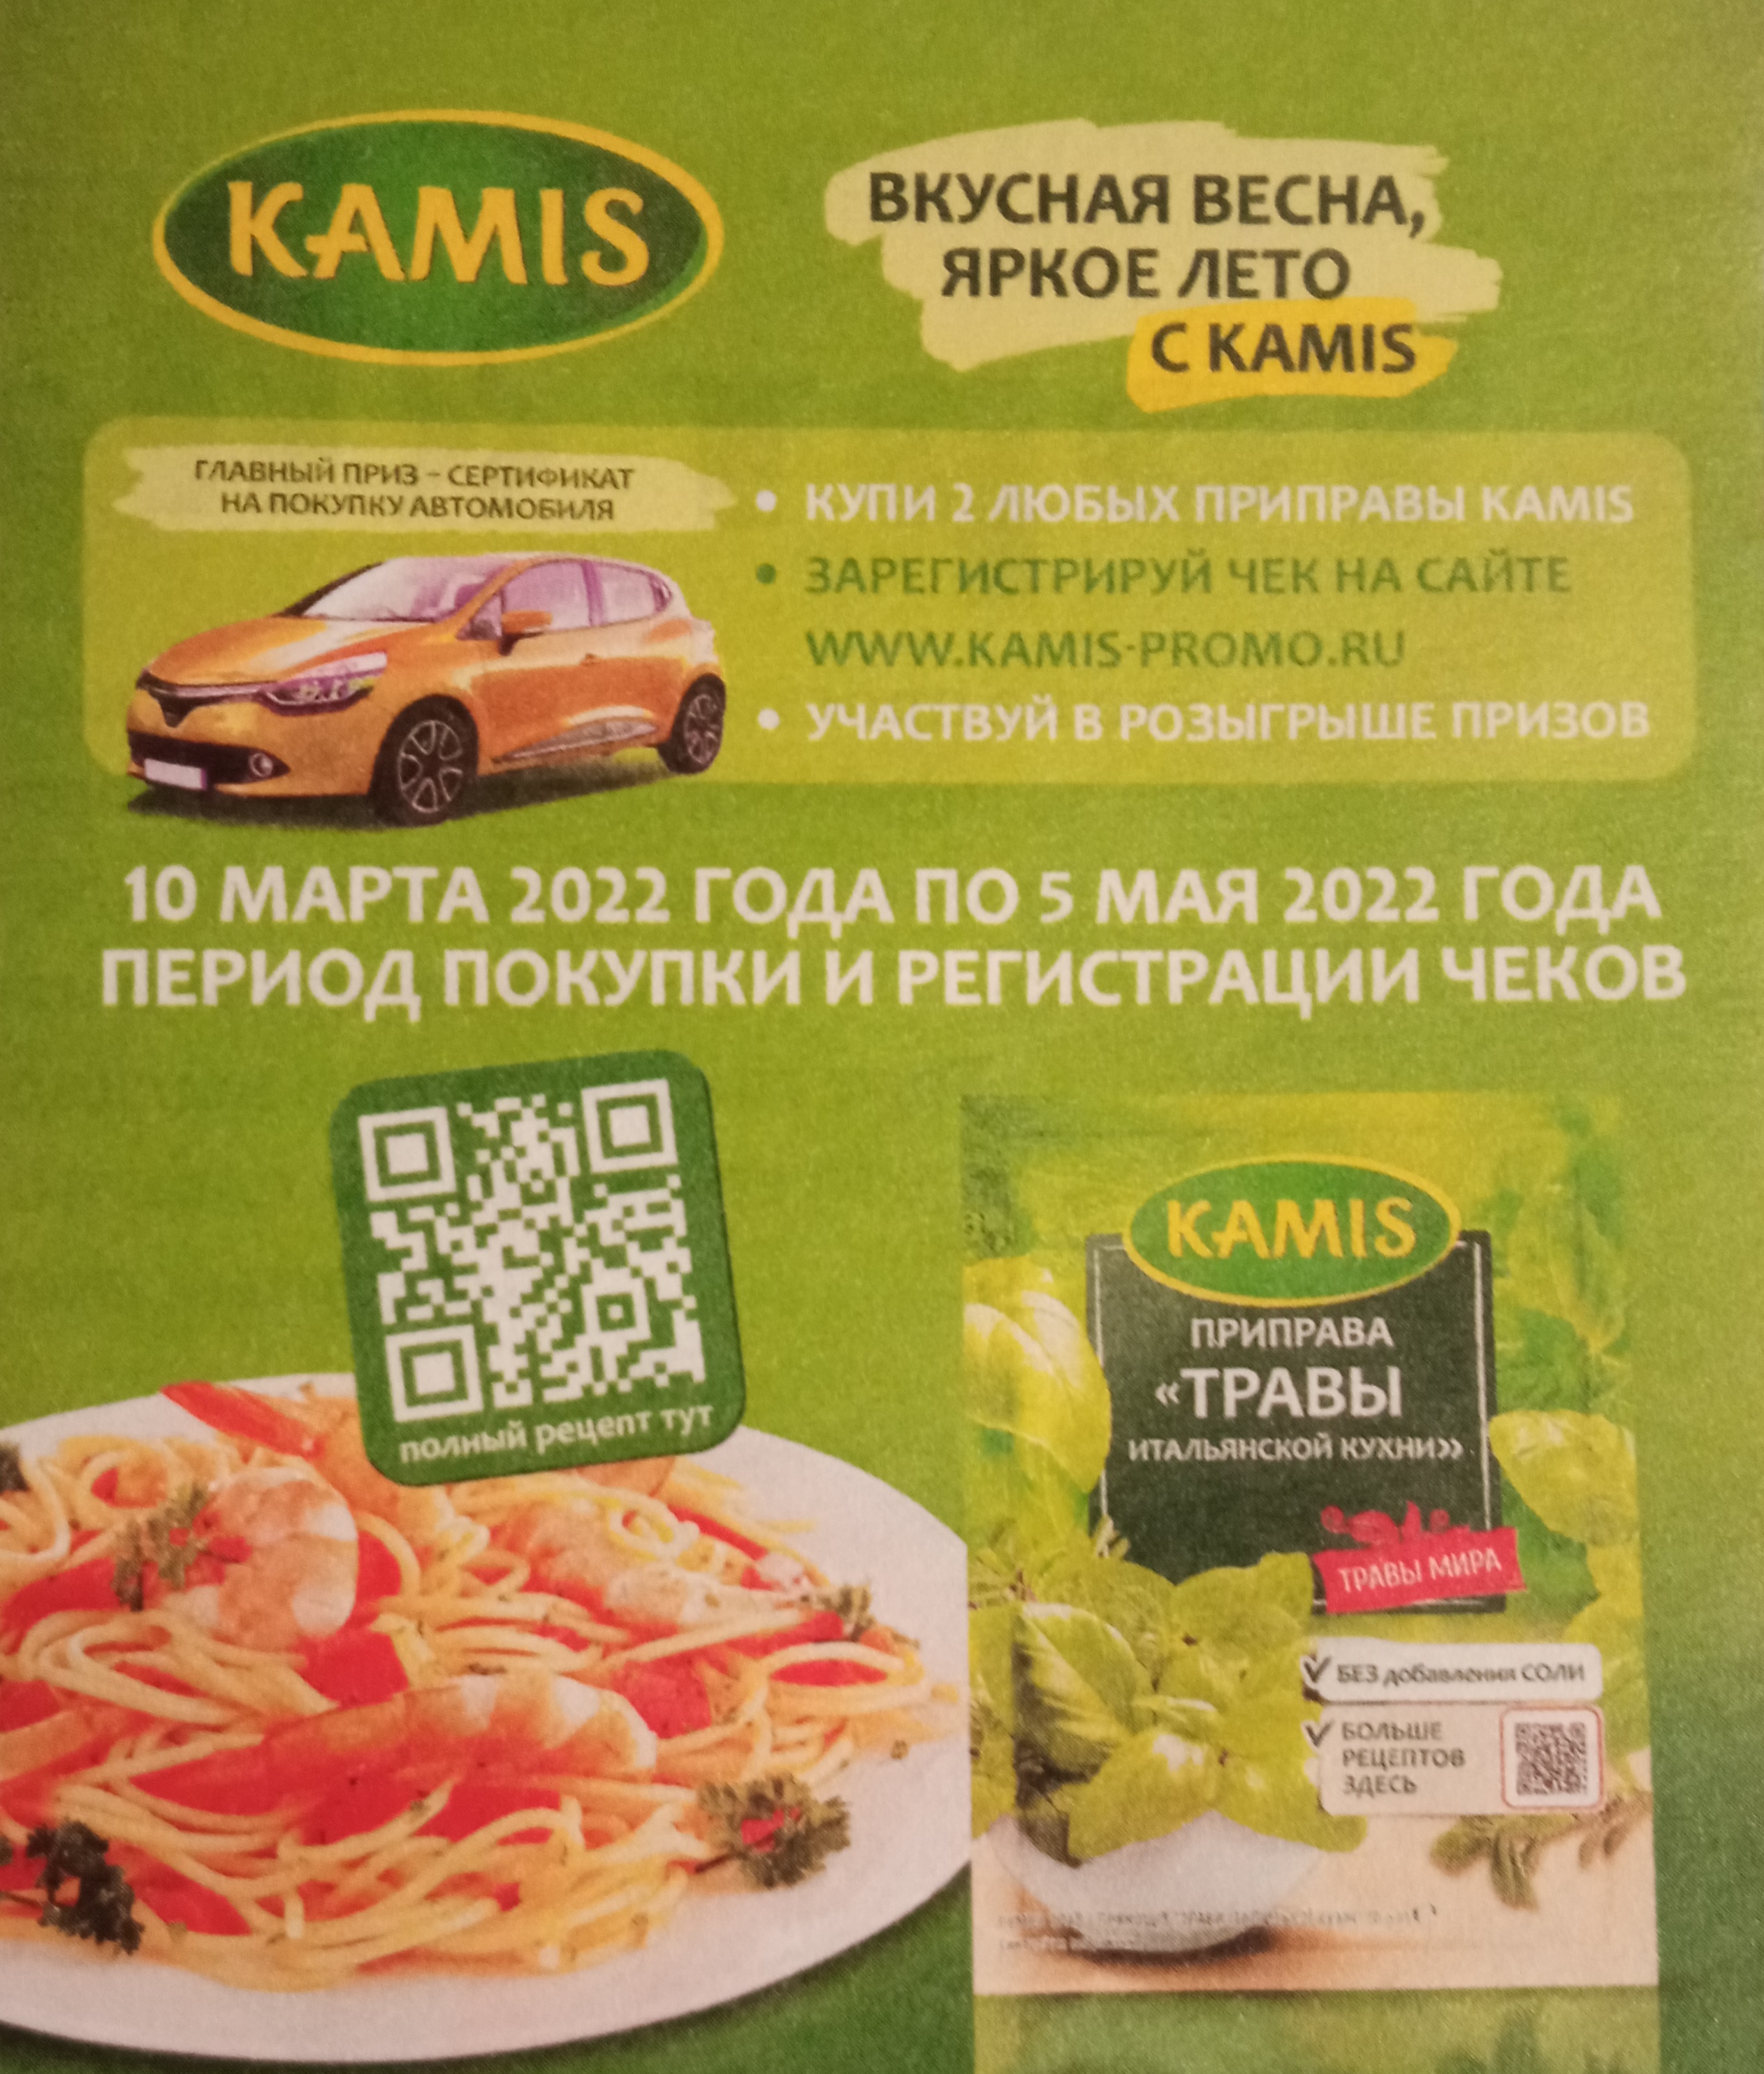 Промо-акция Kamis - Вкусная весна, яркое лето с Kamis